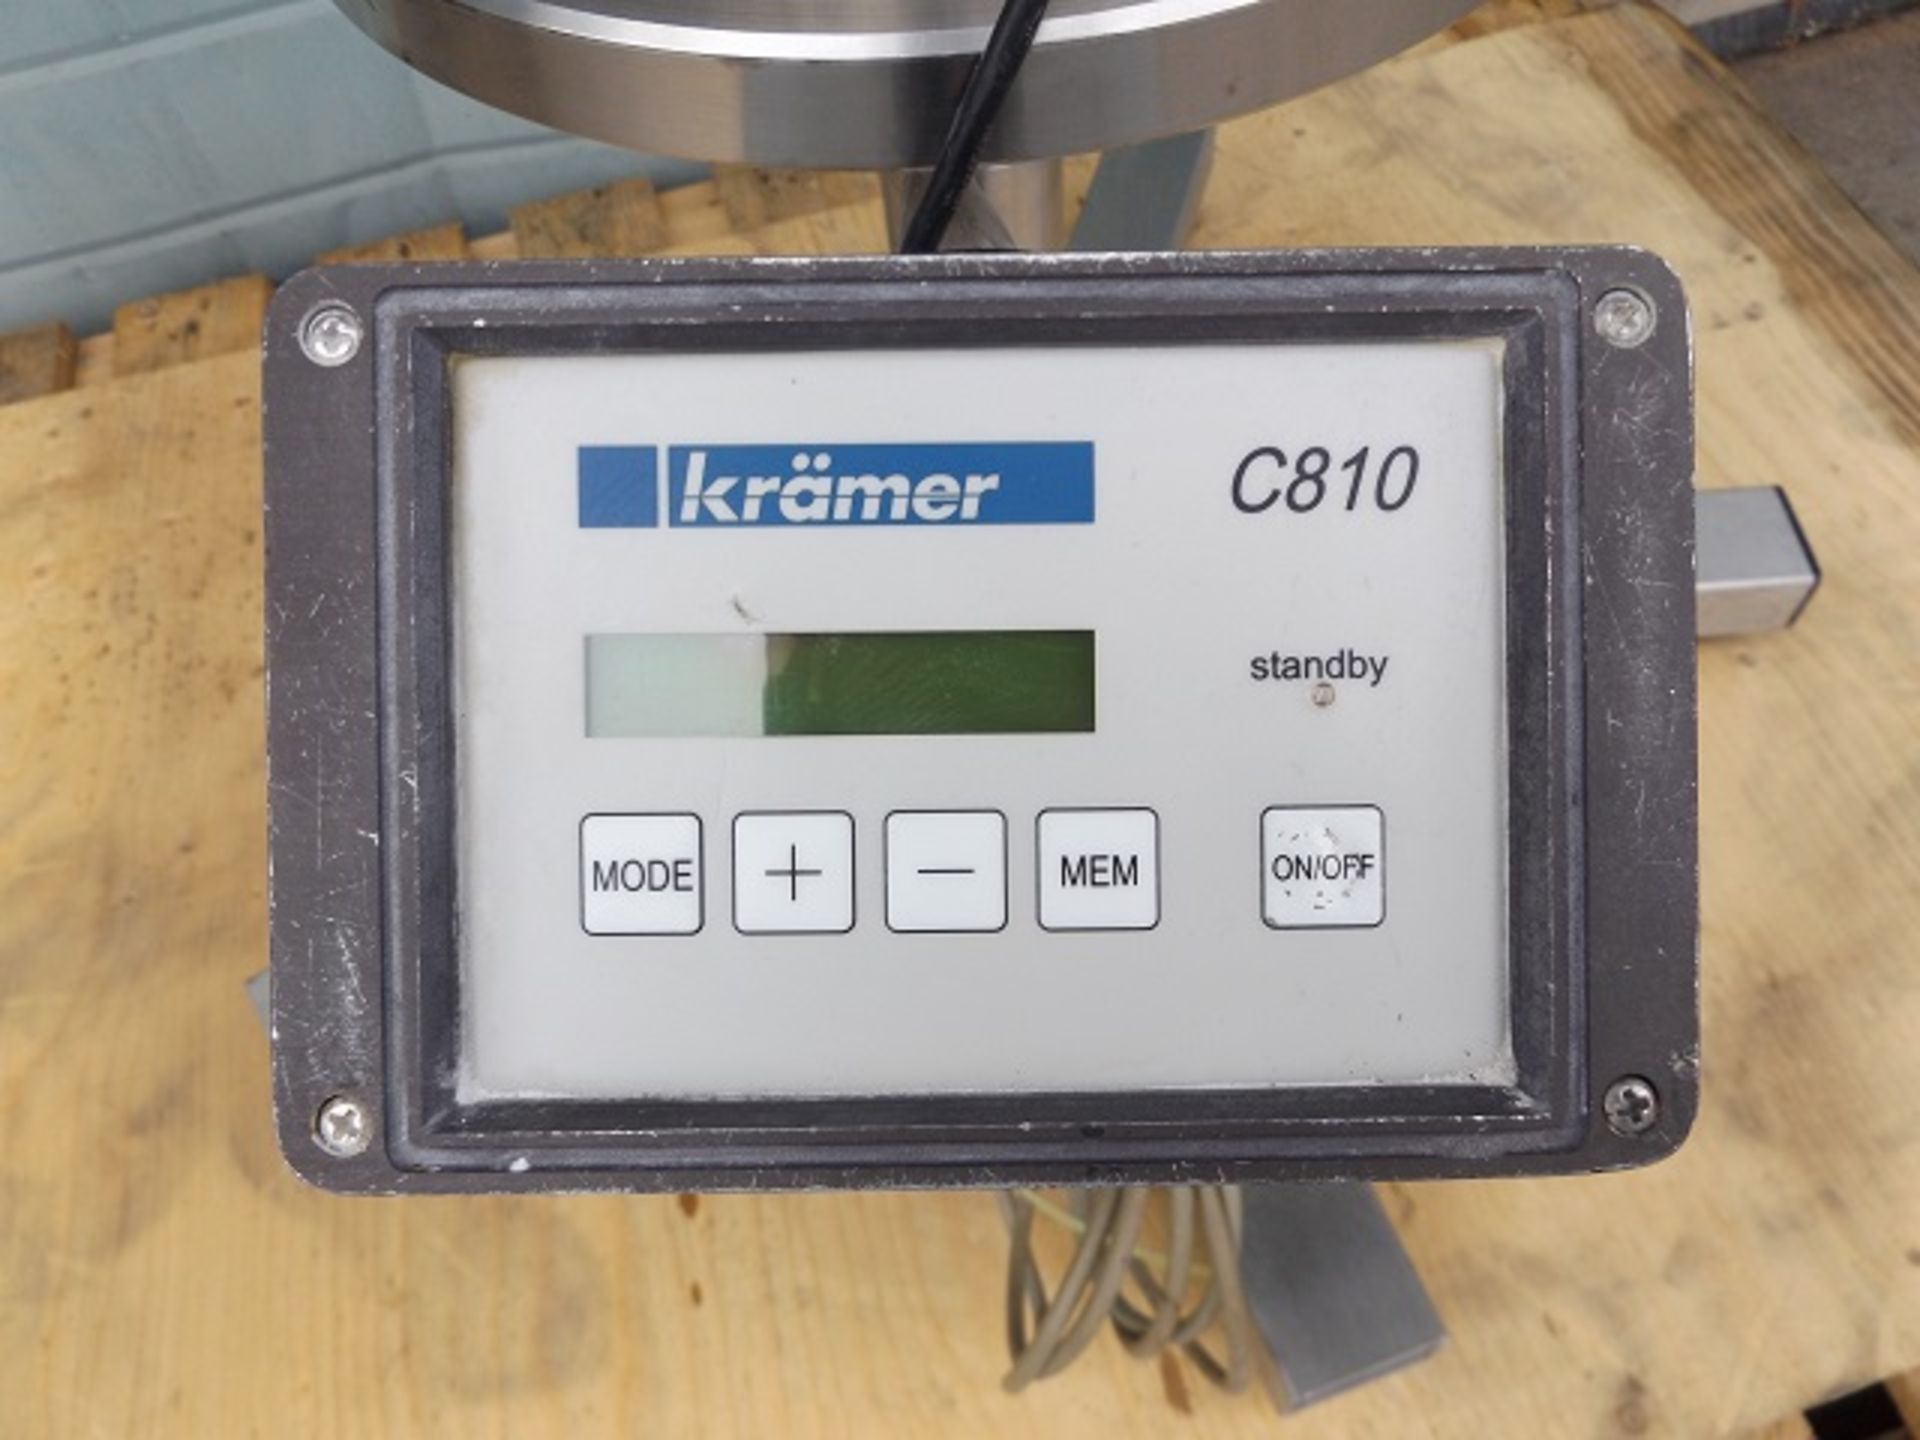 Kraemer model E92-250B pharma grade tablet deduster - Image 6 of 7